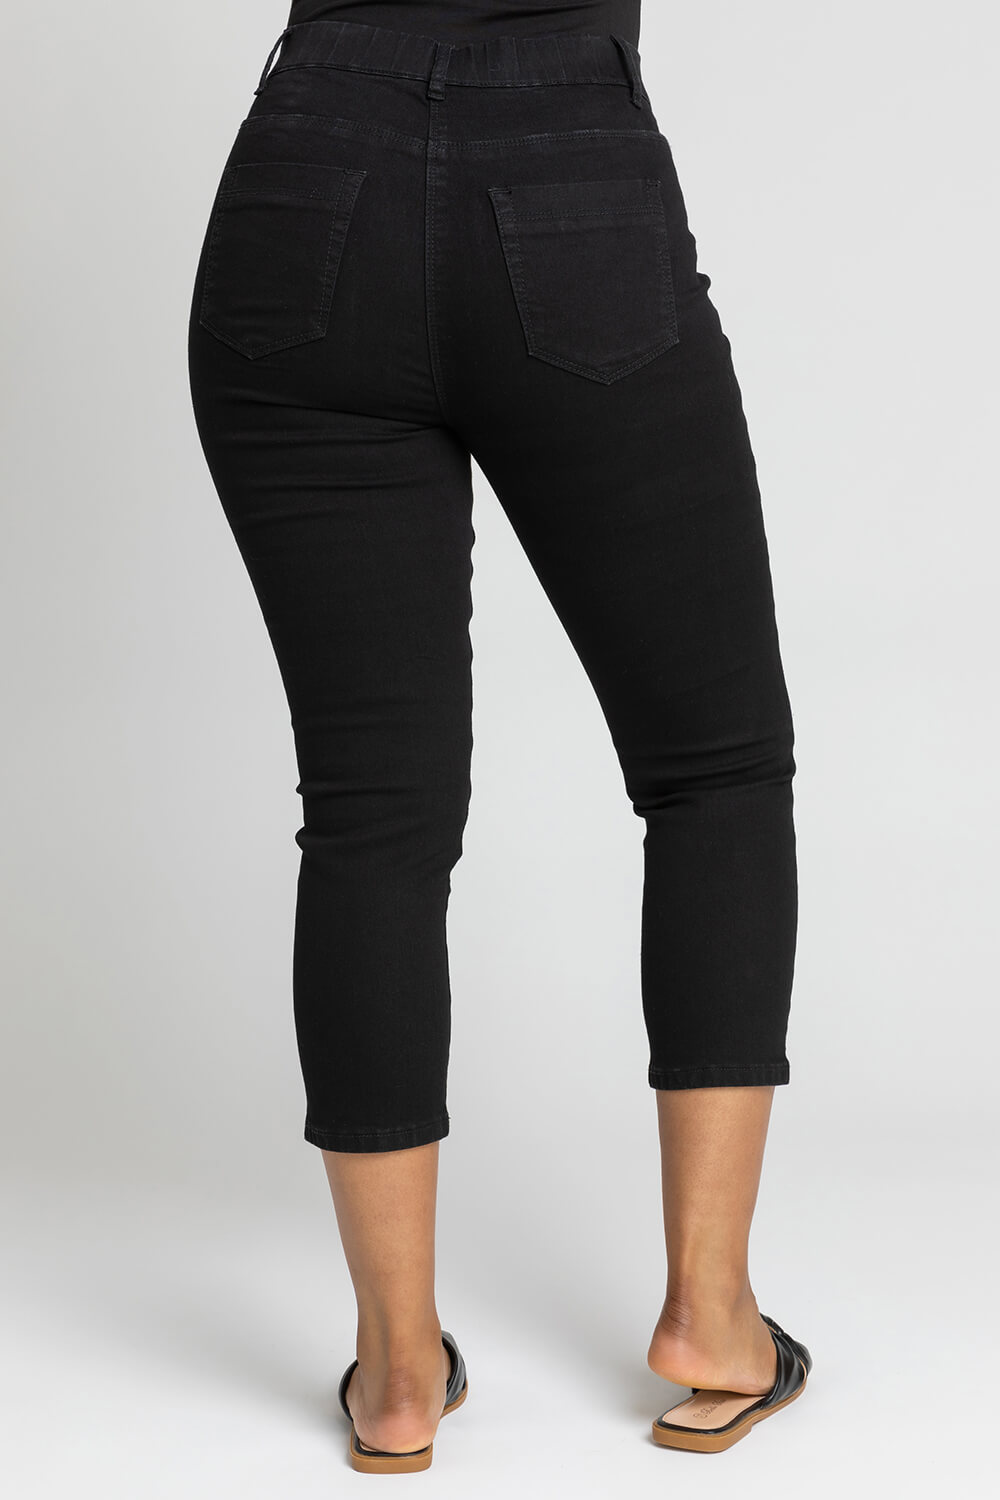 Jaquline Design Women's Plus Size 26 Capri Cropped Pants Black W/5 Pockets NWT 